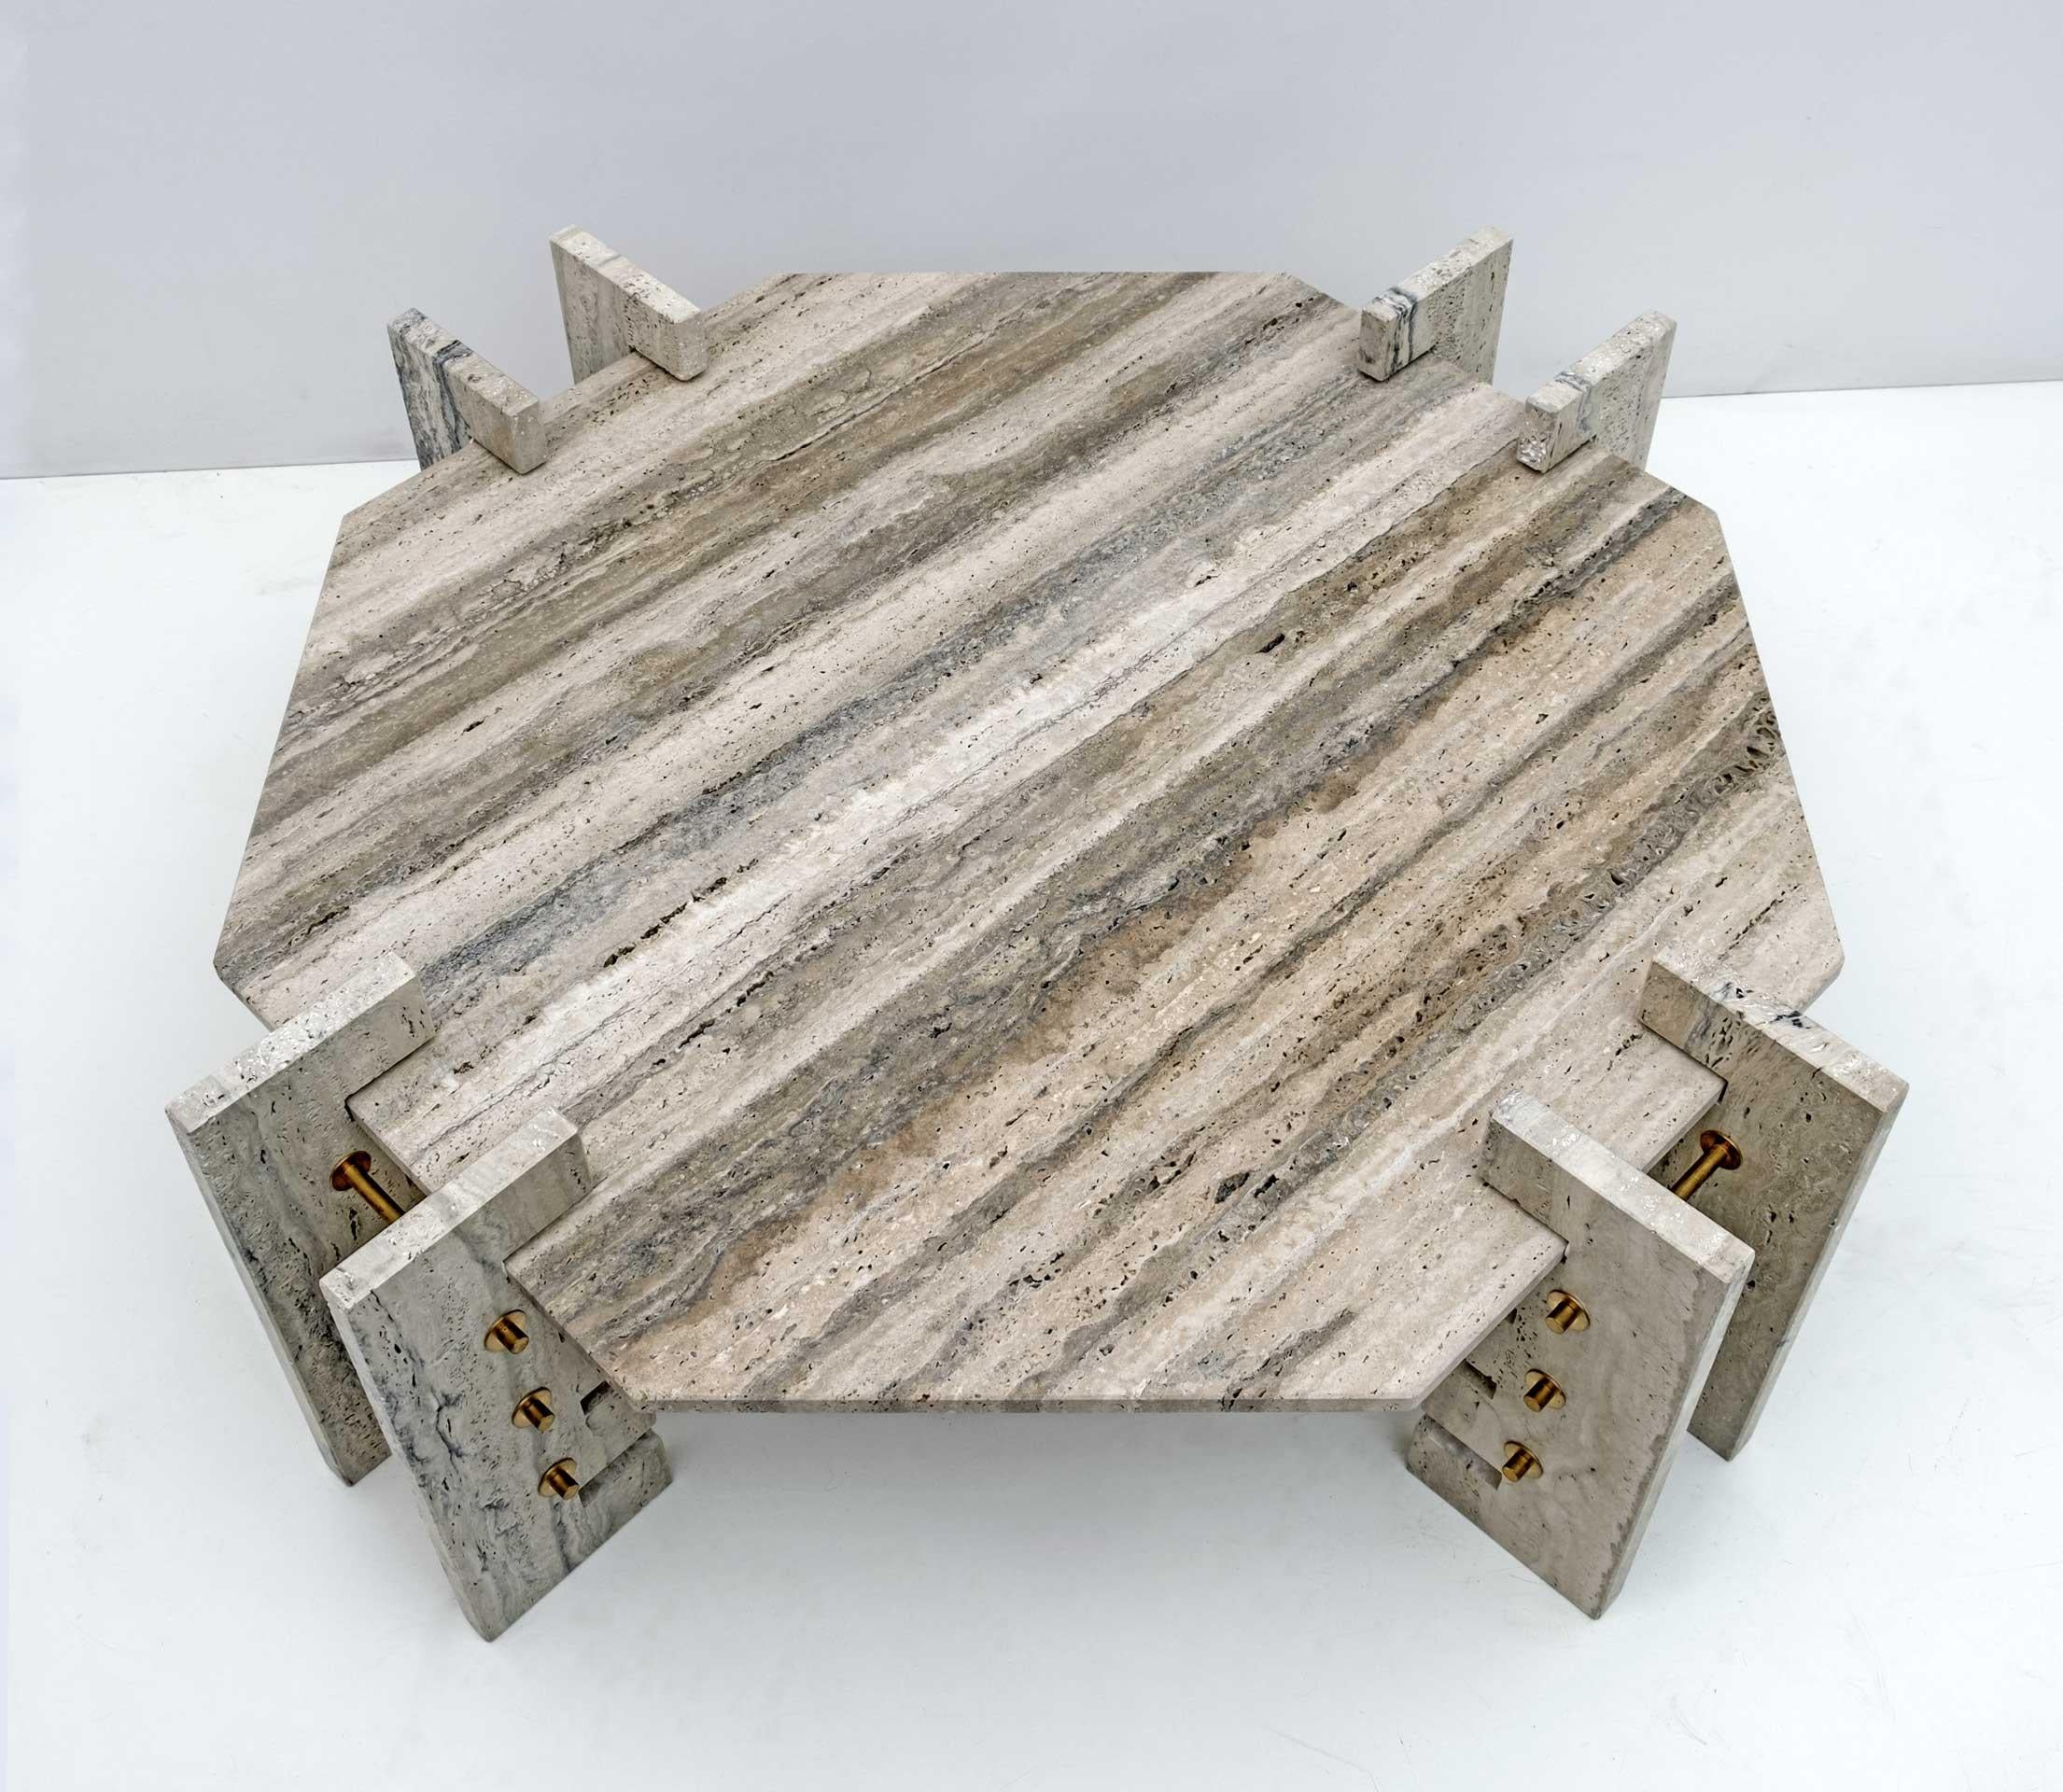 Particulière table octogonale en Travertin avec des bases rainurées pour permettre l'abaissement du plateau, la table est montée avec des boulons en laiton, avec une forme minimaliste, produite dans les années 70, en parfait état, comme le montrent